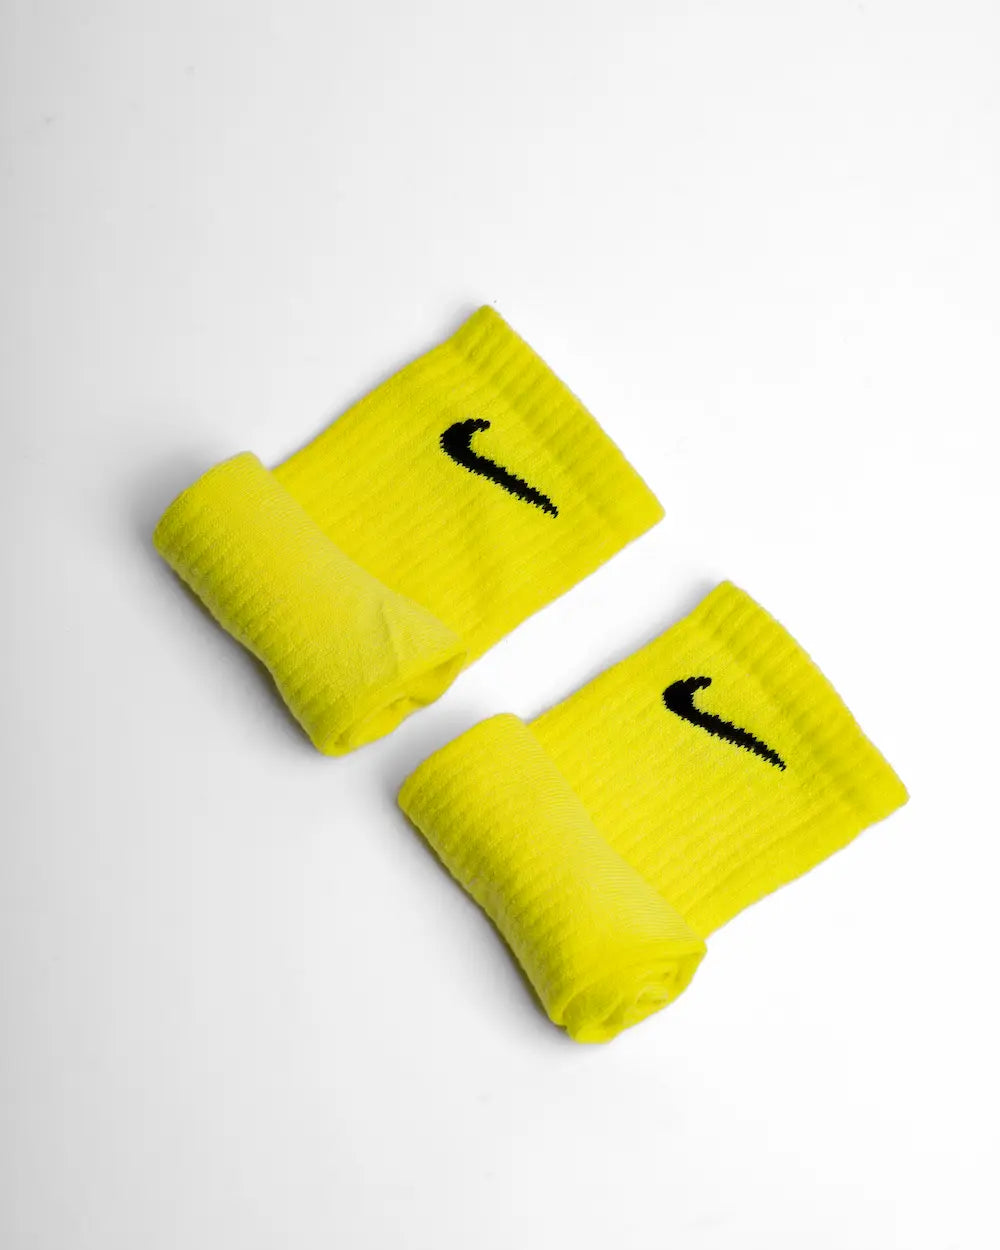 Calzini nike colorati con tecnica di tintura, tonalità Fluo Yellow (giallo neon)